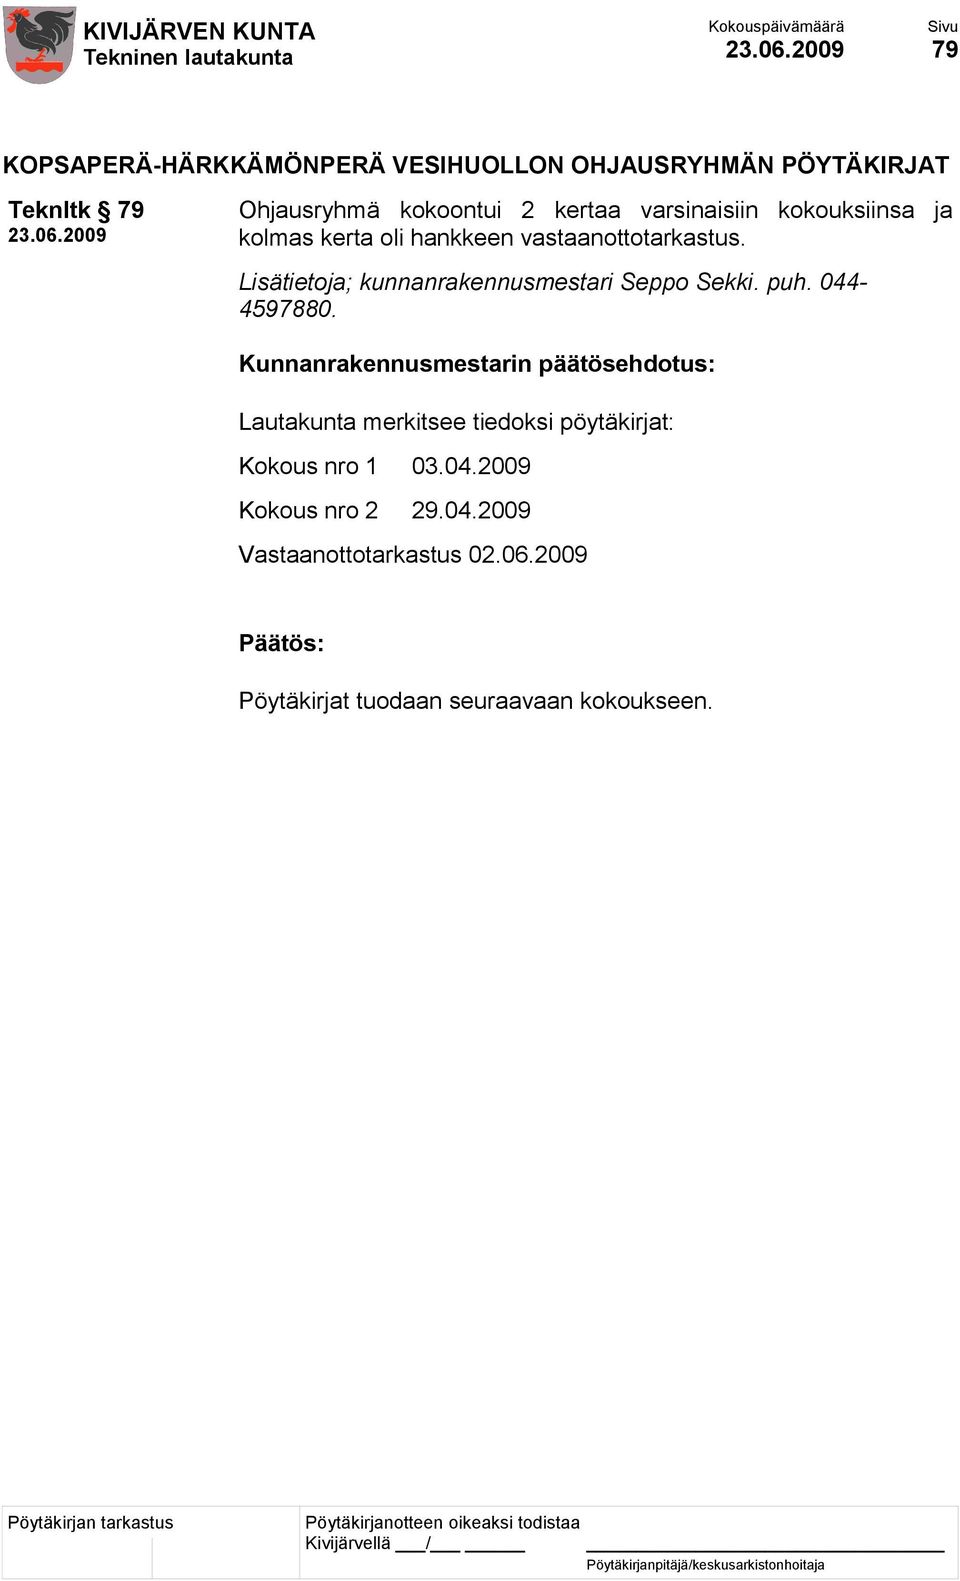 Lisätietoja; kunnanrakennusmestari Seppo Sekki. puh. 044-4597880.